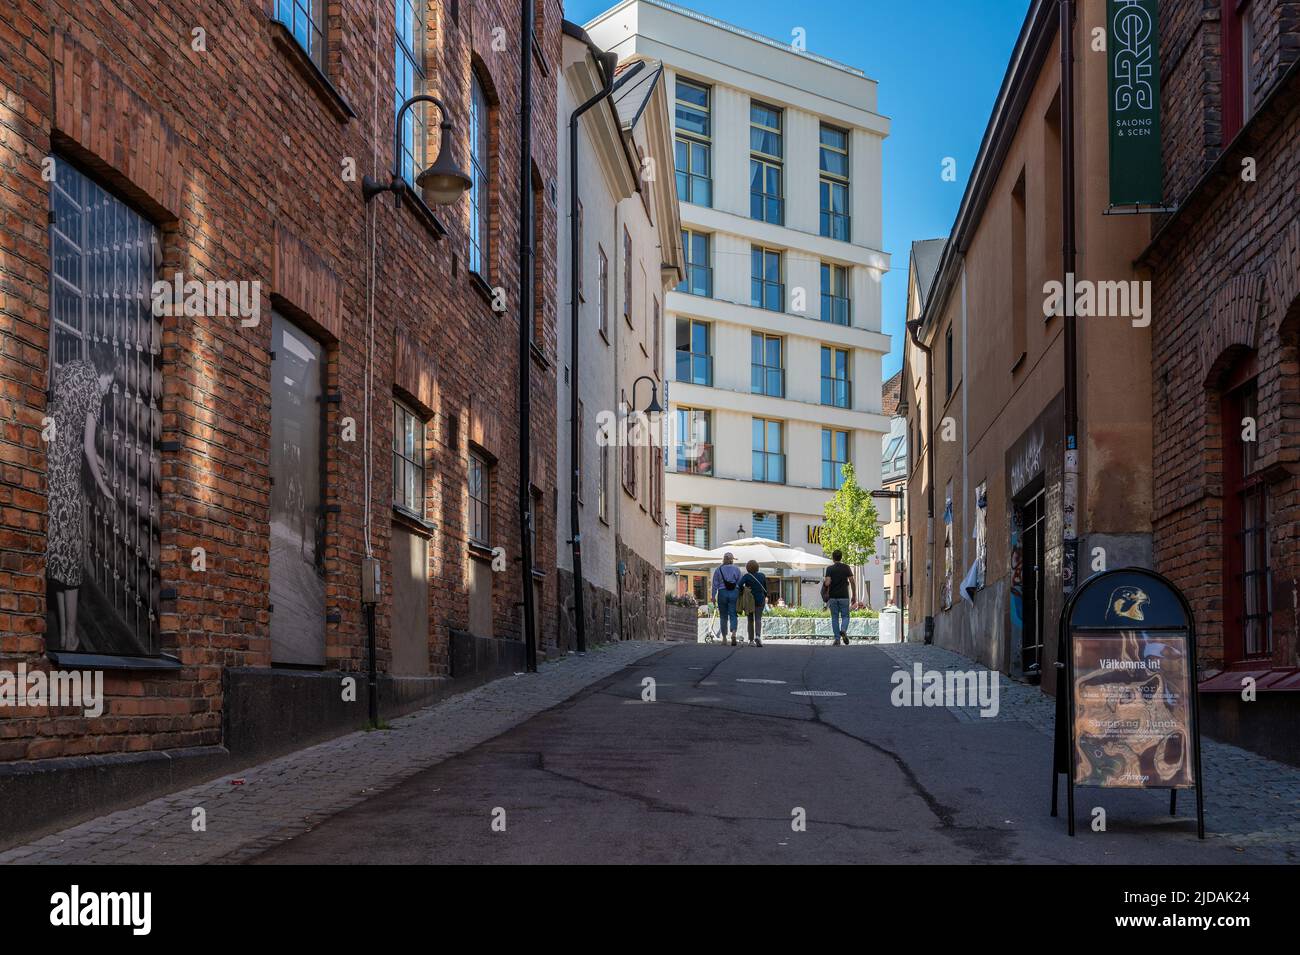 Holmbrogränd è un vicolo storico attraverso il paesaggio industriale di Norrköping, una storica città industriale svedese Foto Stock